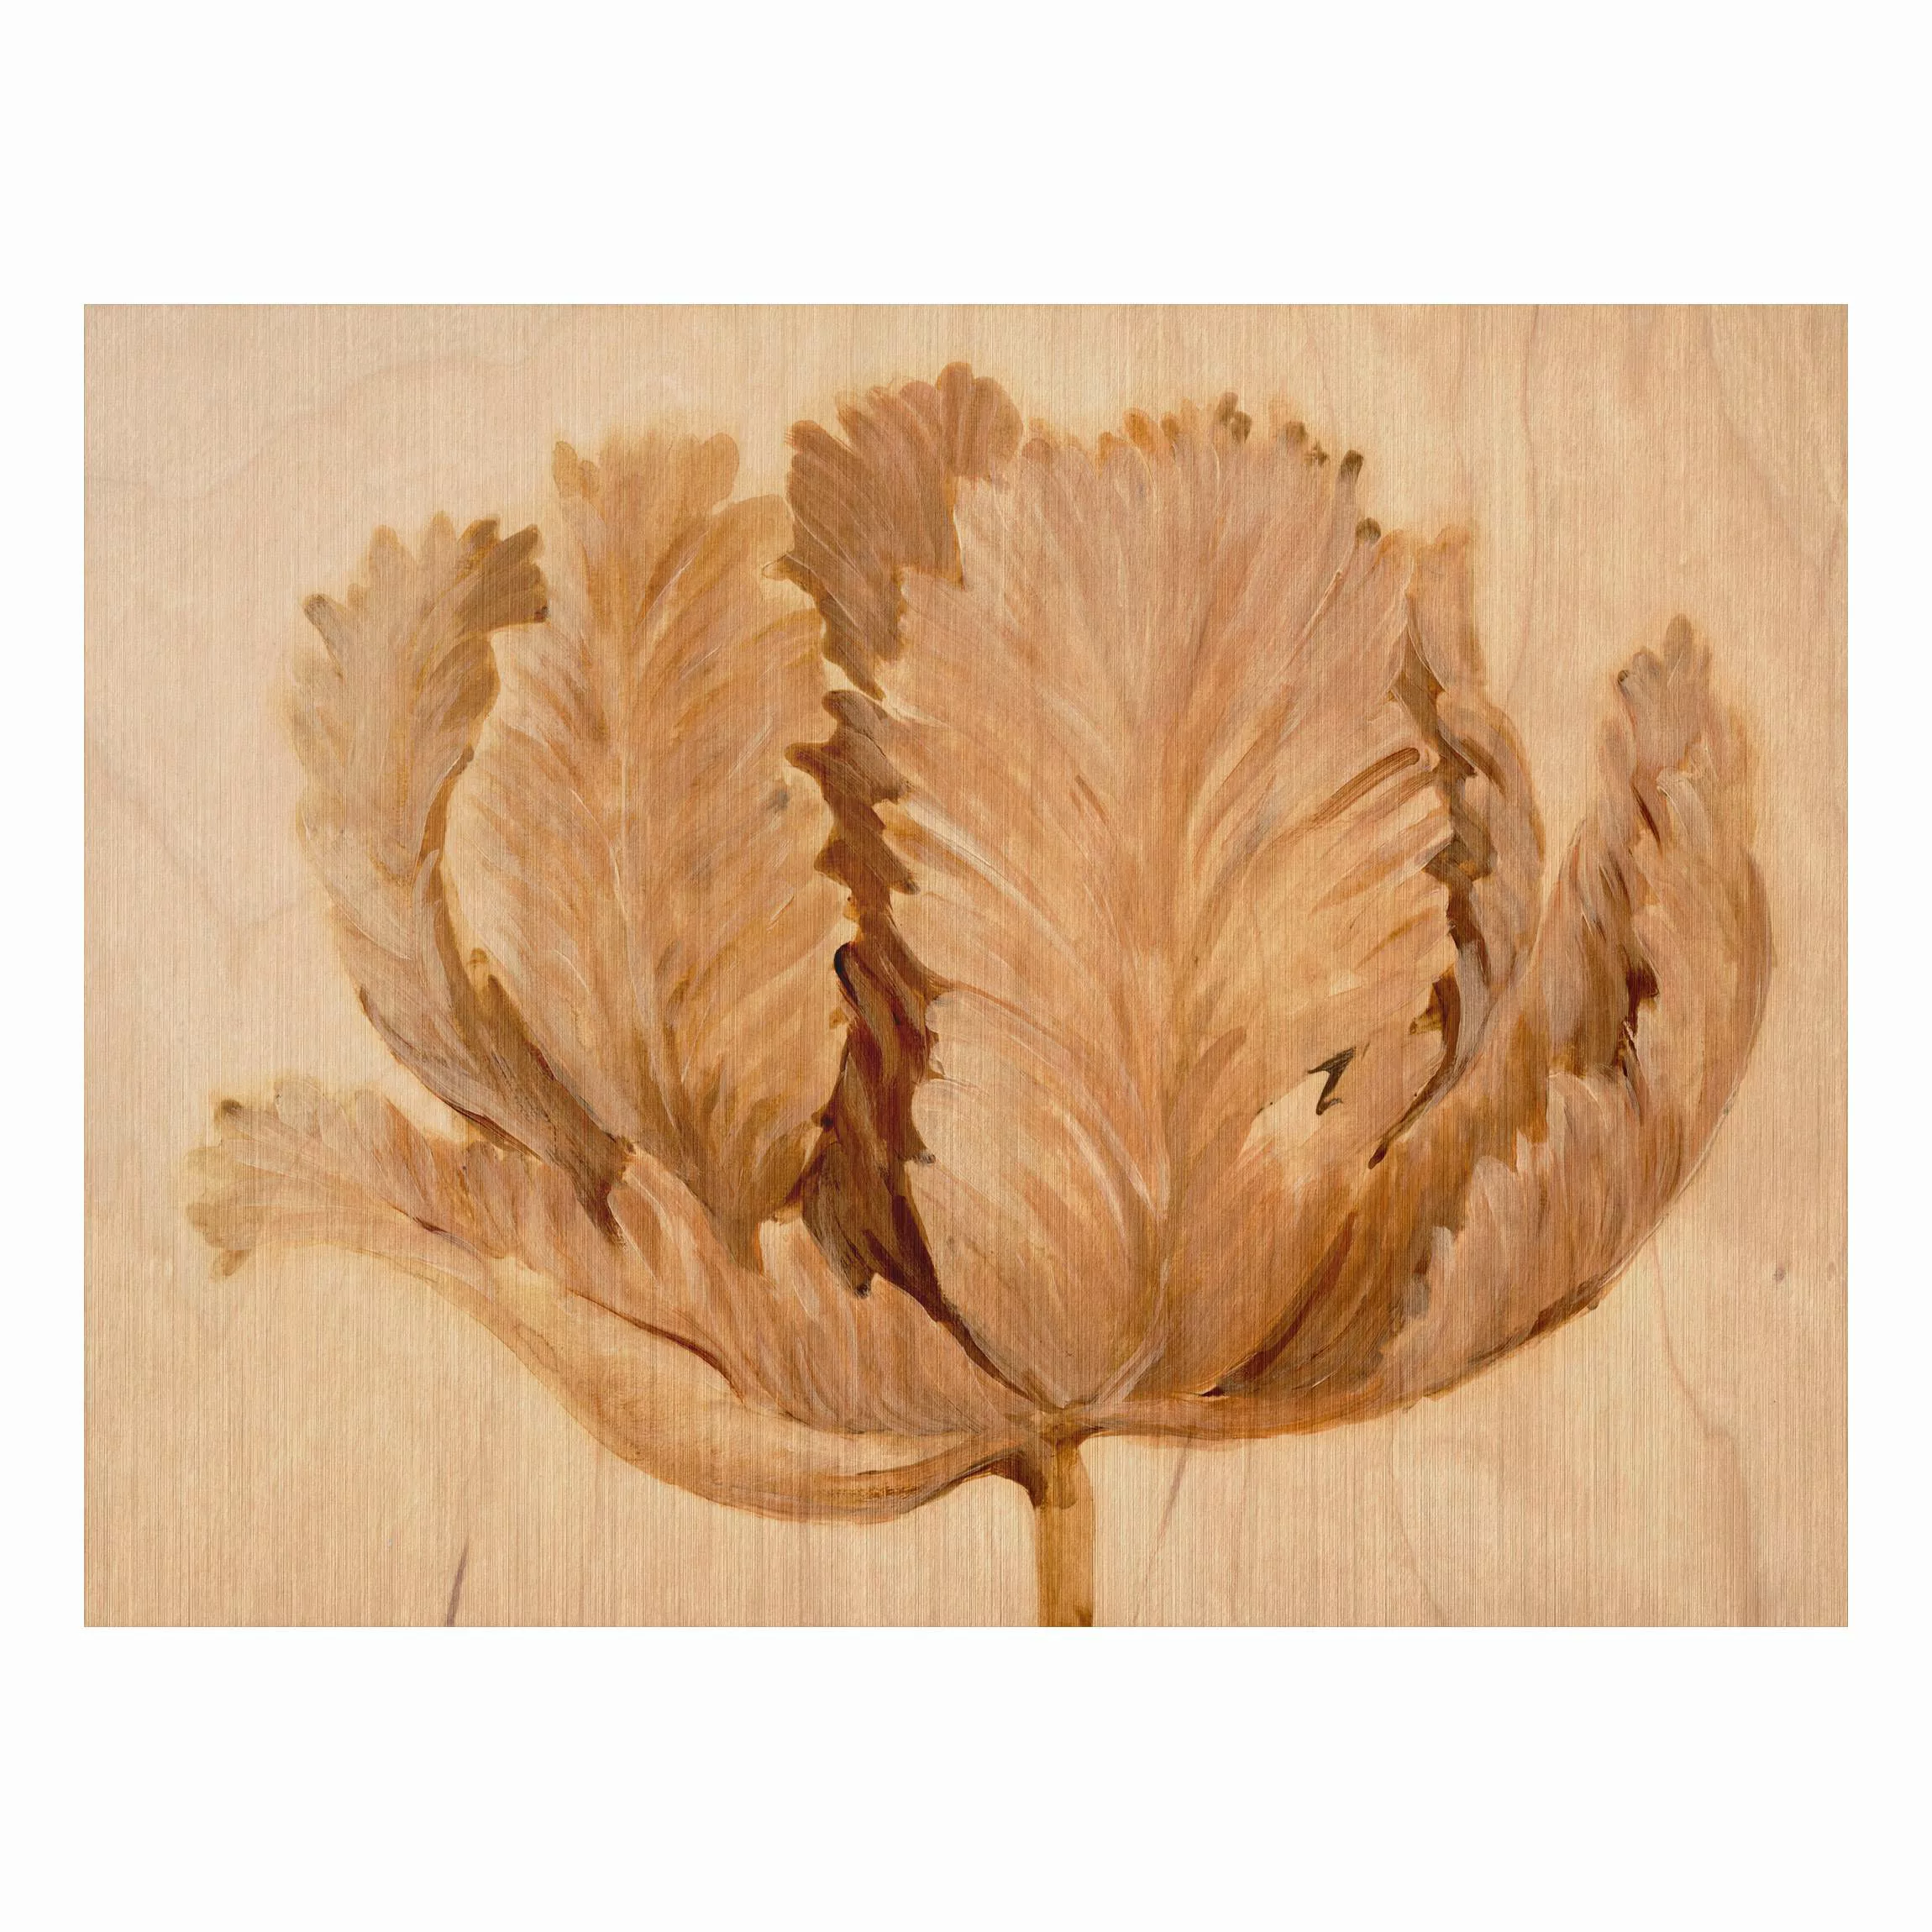 Alu-Dibond Bild Blumen - Querformat 4:3 Sepia Tulpe auf Holz II günstig online kaufen